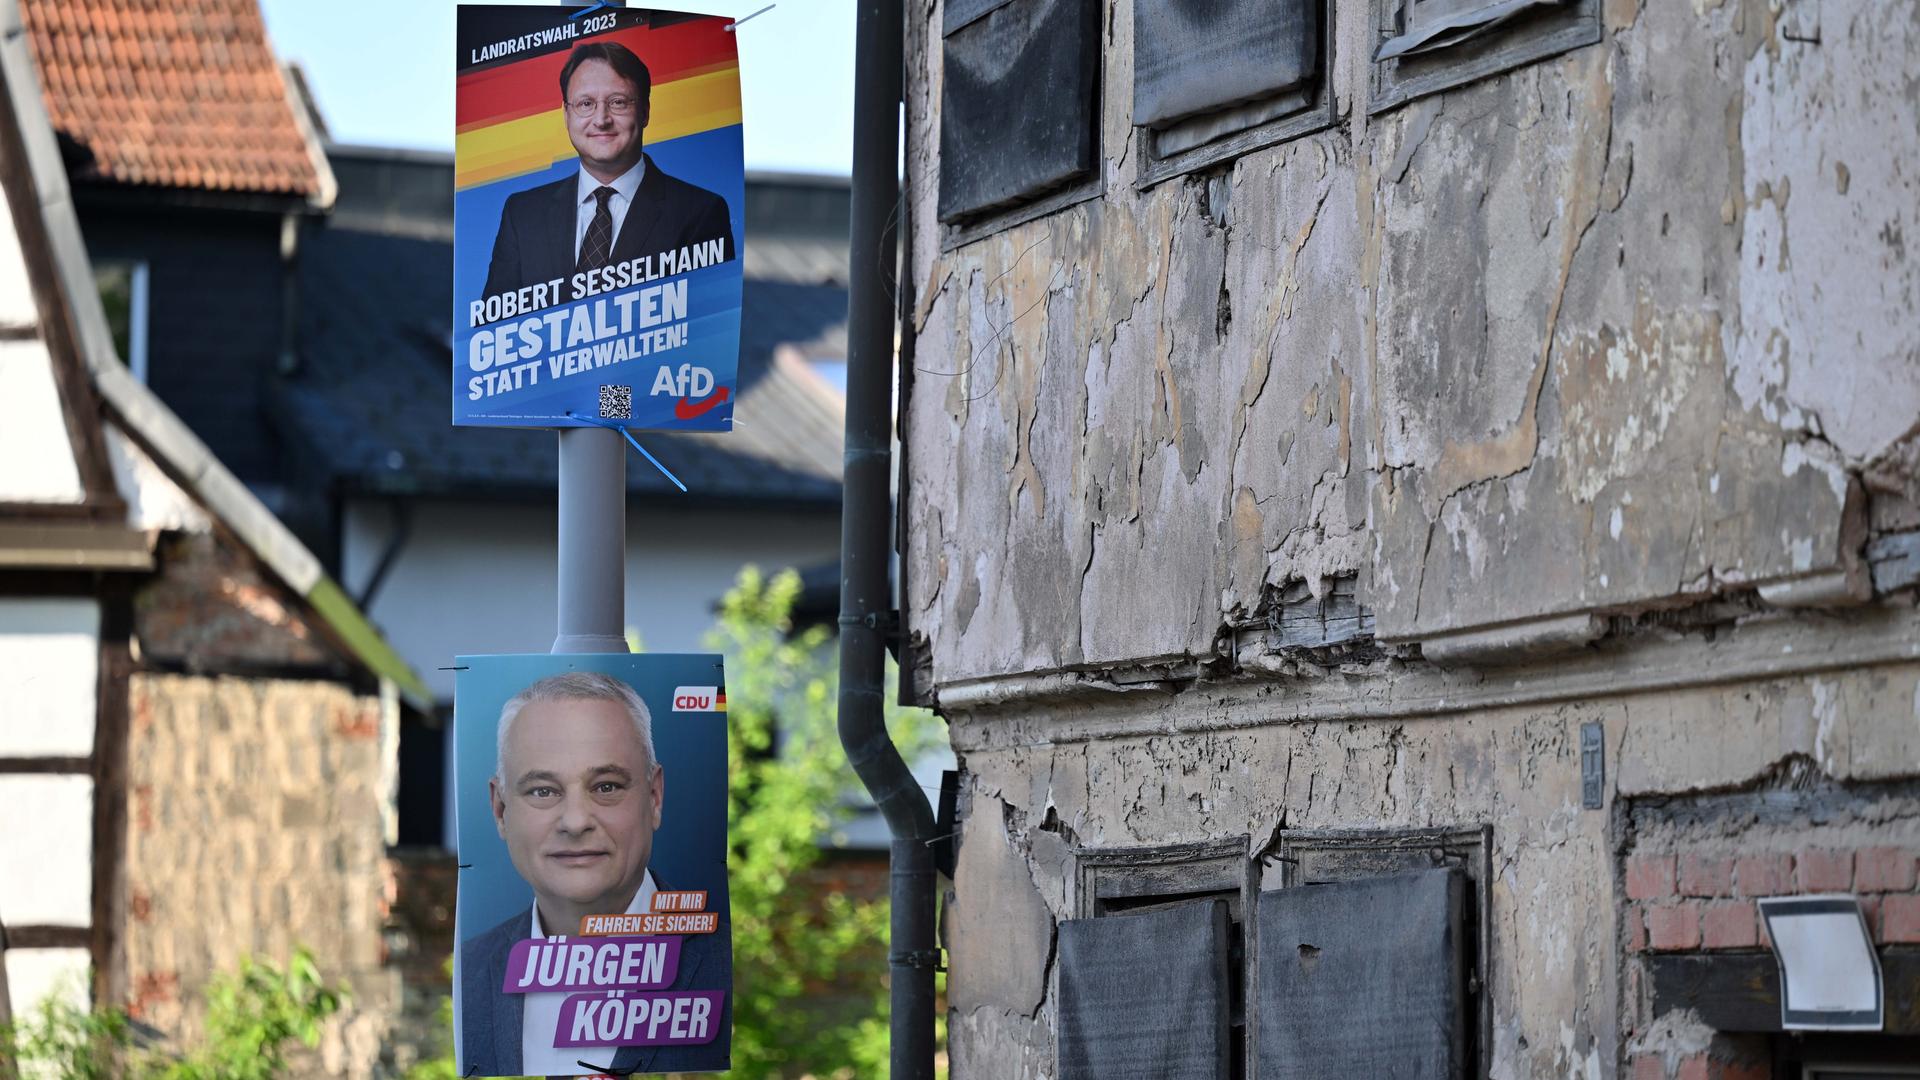 Wahlplakate in der Sonneberger Innenstadt am Tag der Stichwahl des Landrats im Kreis Sonneberg. Der AfD-Landtagsabgeordnete Robert Sesselmann trat in der Stichwahl gegen Jürgen Köpper (CDU) an, 25.06.2023.